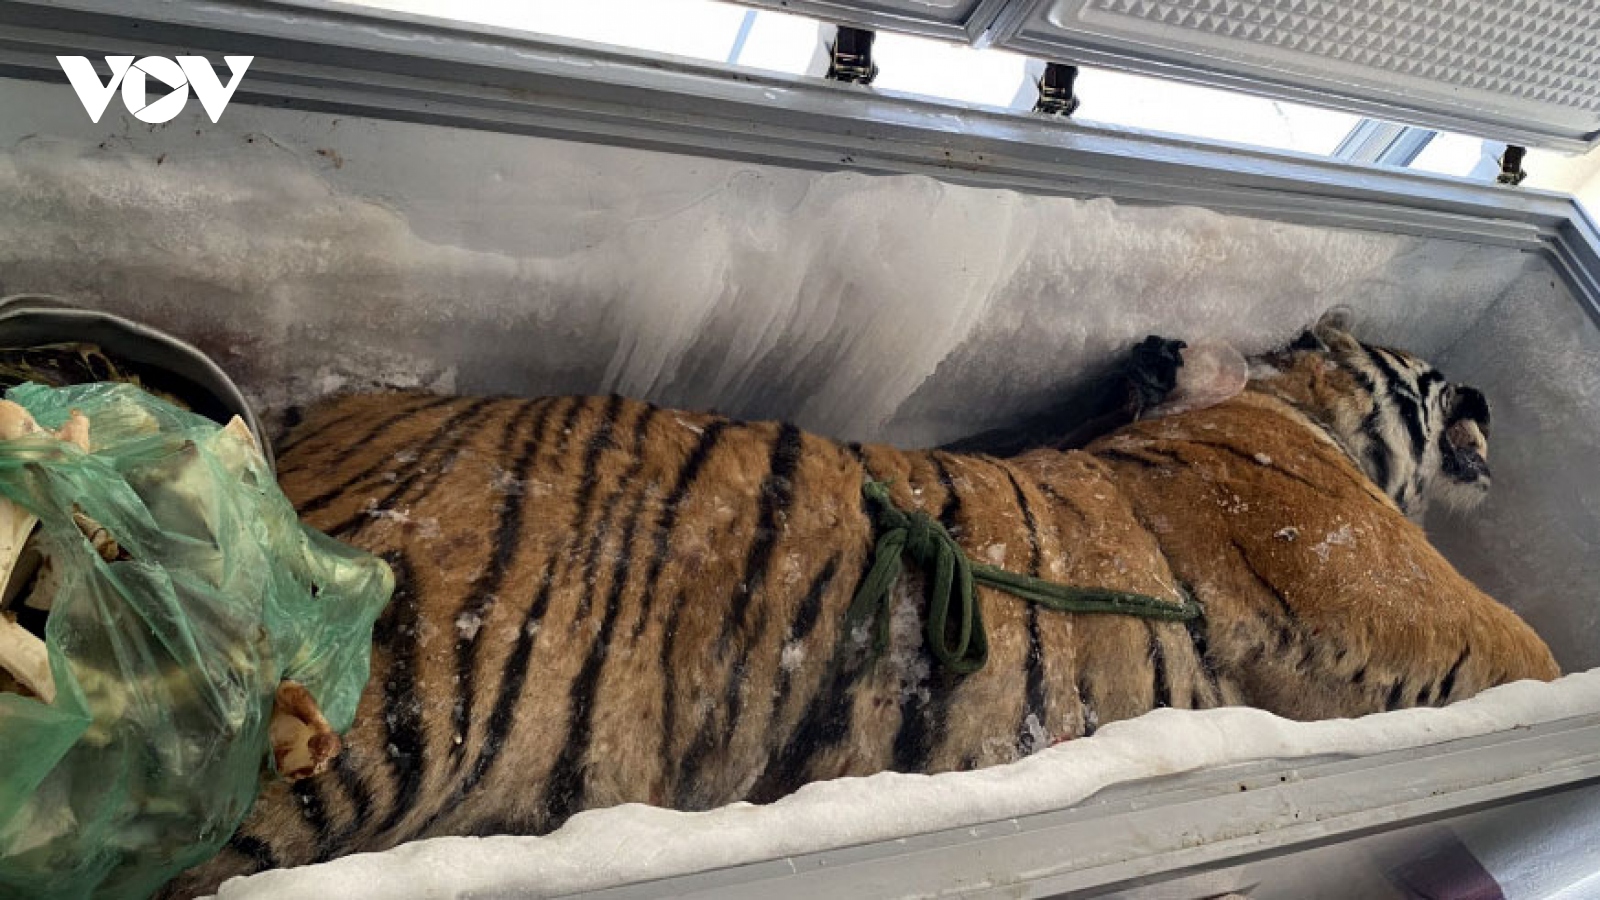 Khởi tố đối tượng tàng trữ “xác ướp” hổ nặng 160 kg